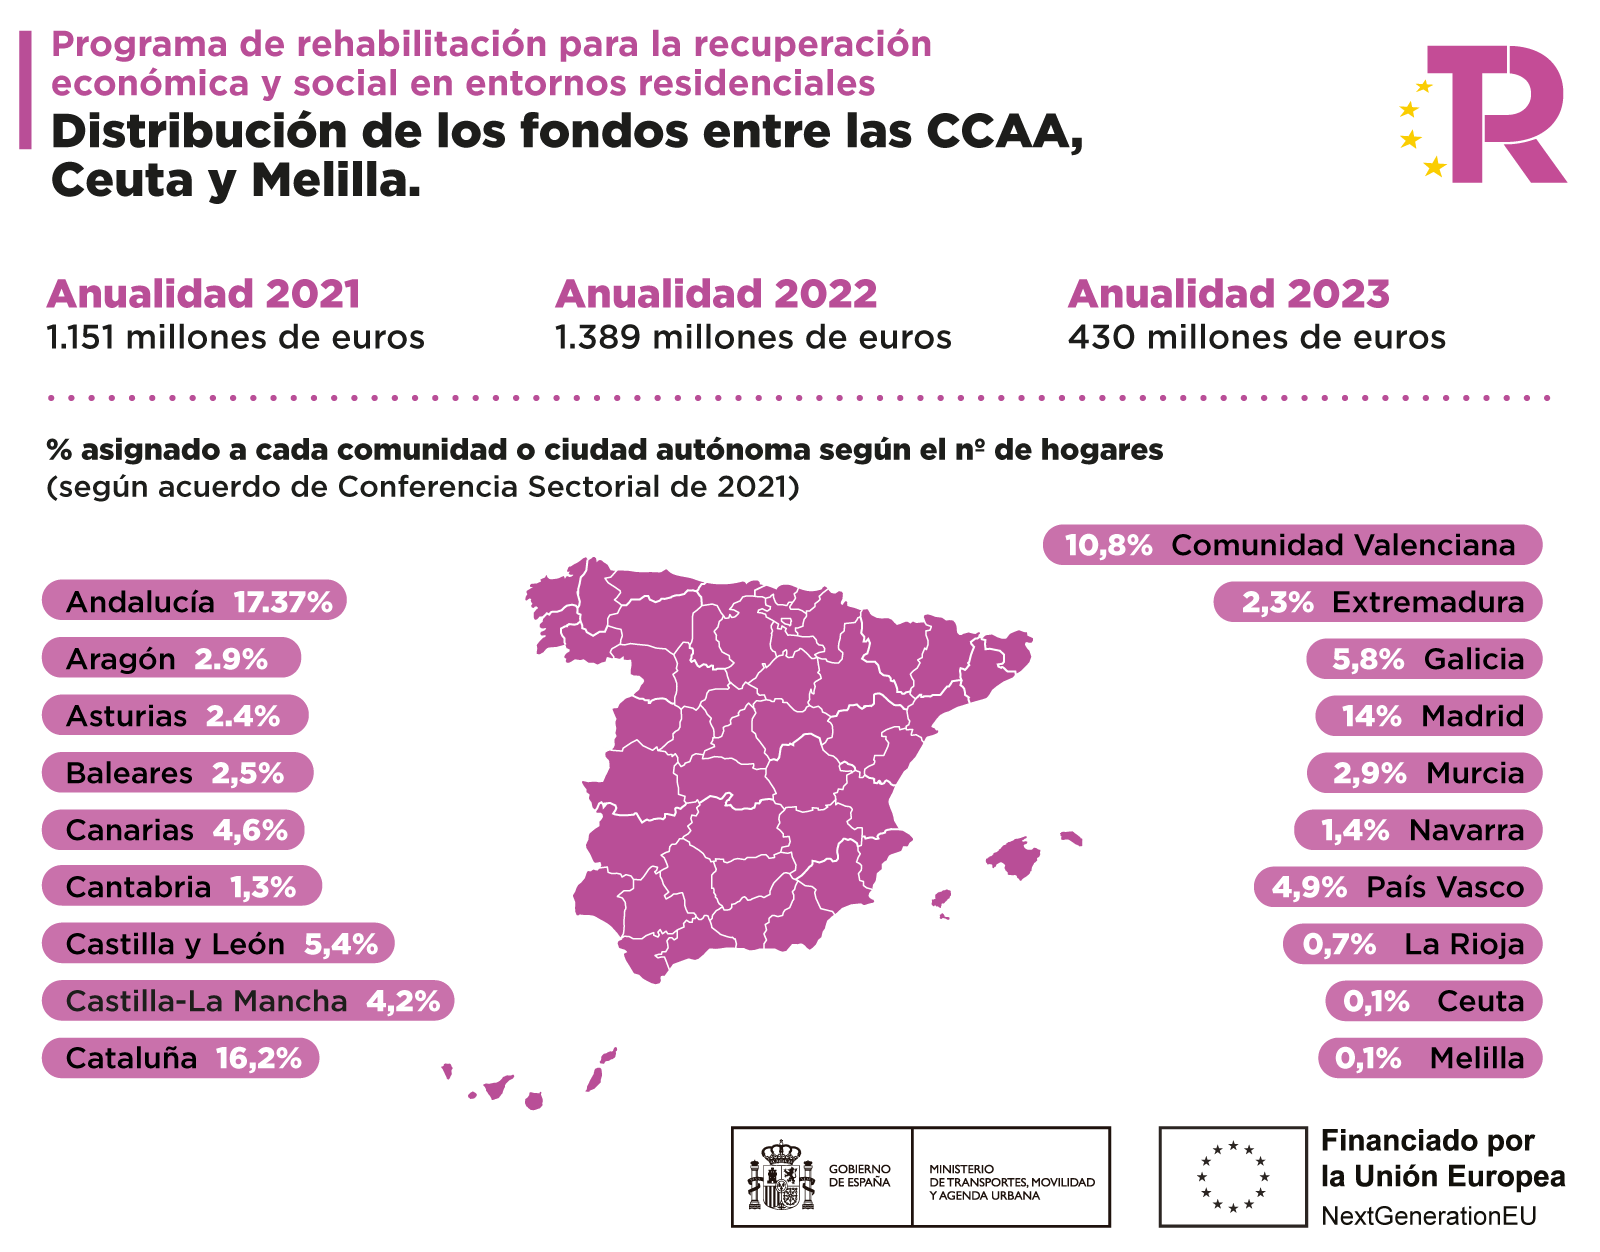 Imagen con la distribución de los fondos de las CCAA, Ceuta y Melilla